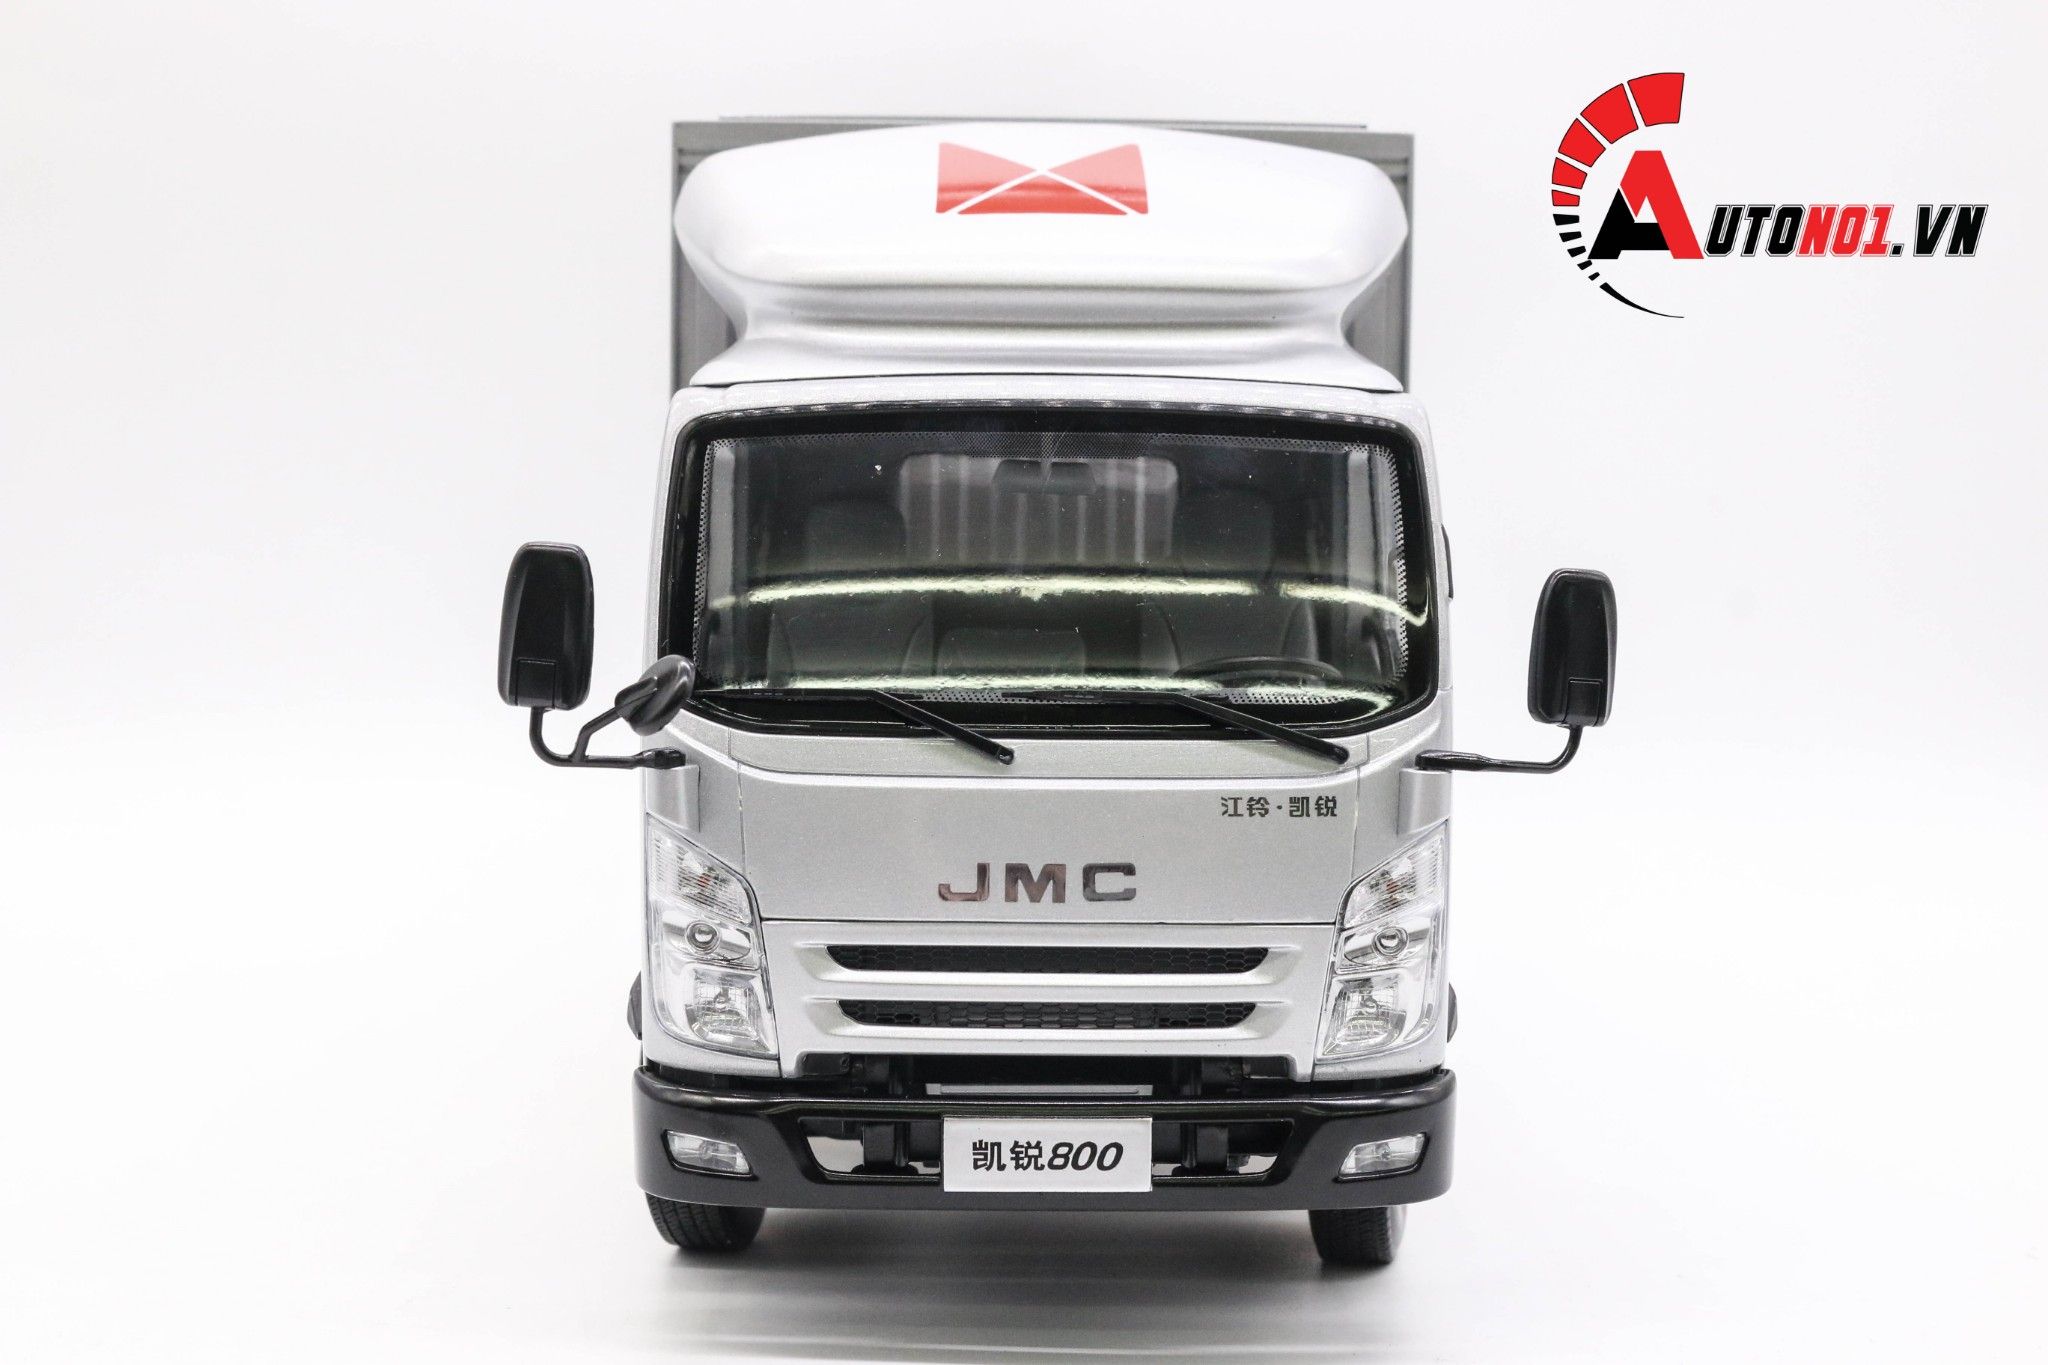  Mô hình xe tải N800 Silver 1:18 Jmc 5155 